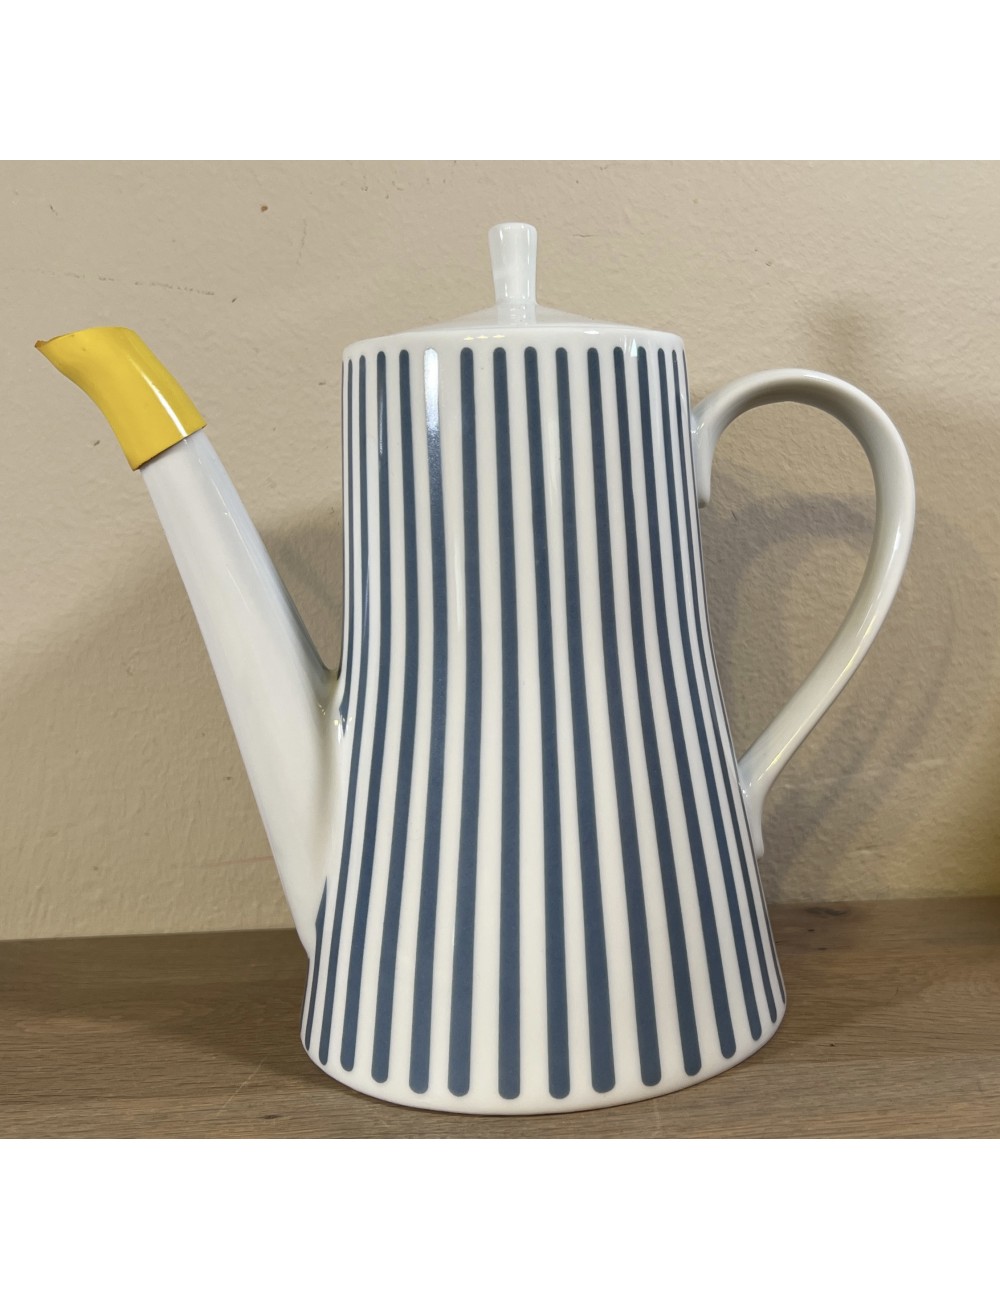 Coffee pot/teapot - Melitta - ZURICH/ZÜRICH series in blue/white striped design